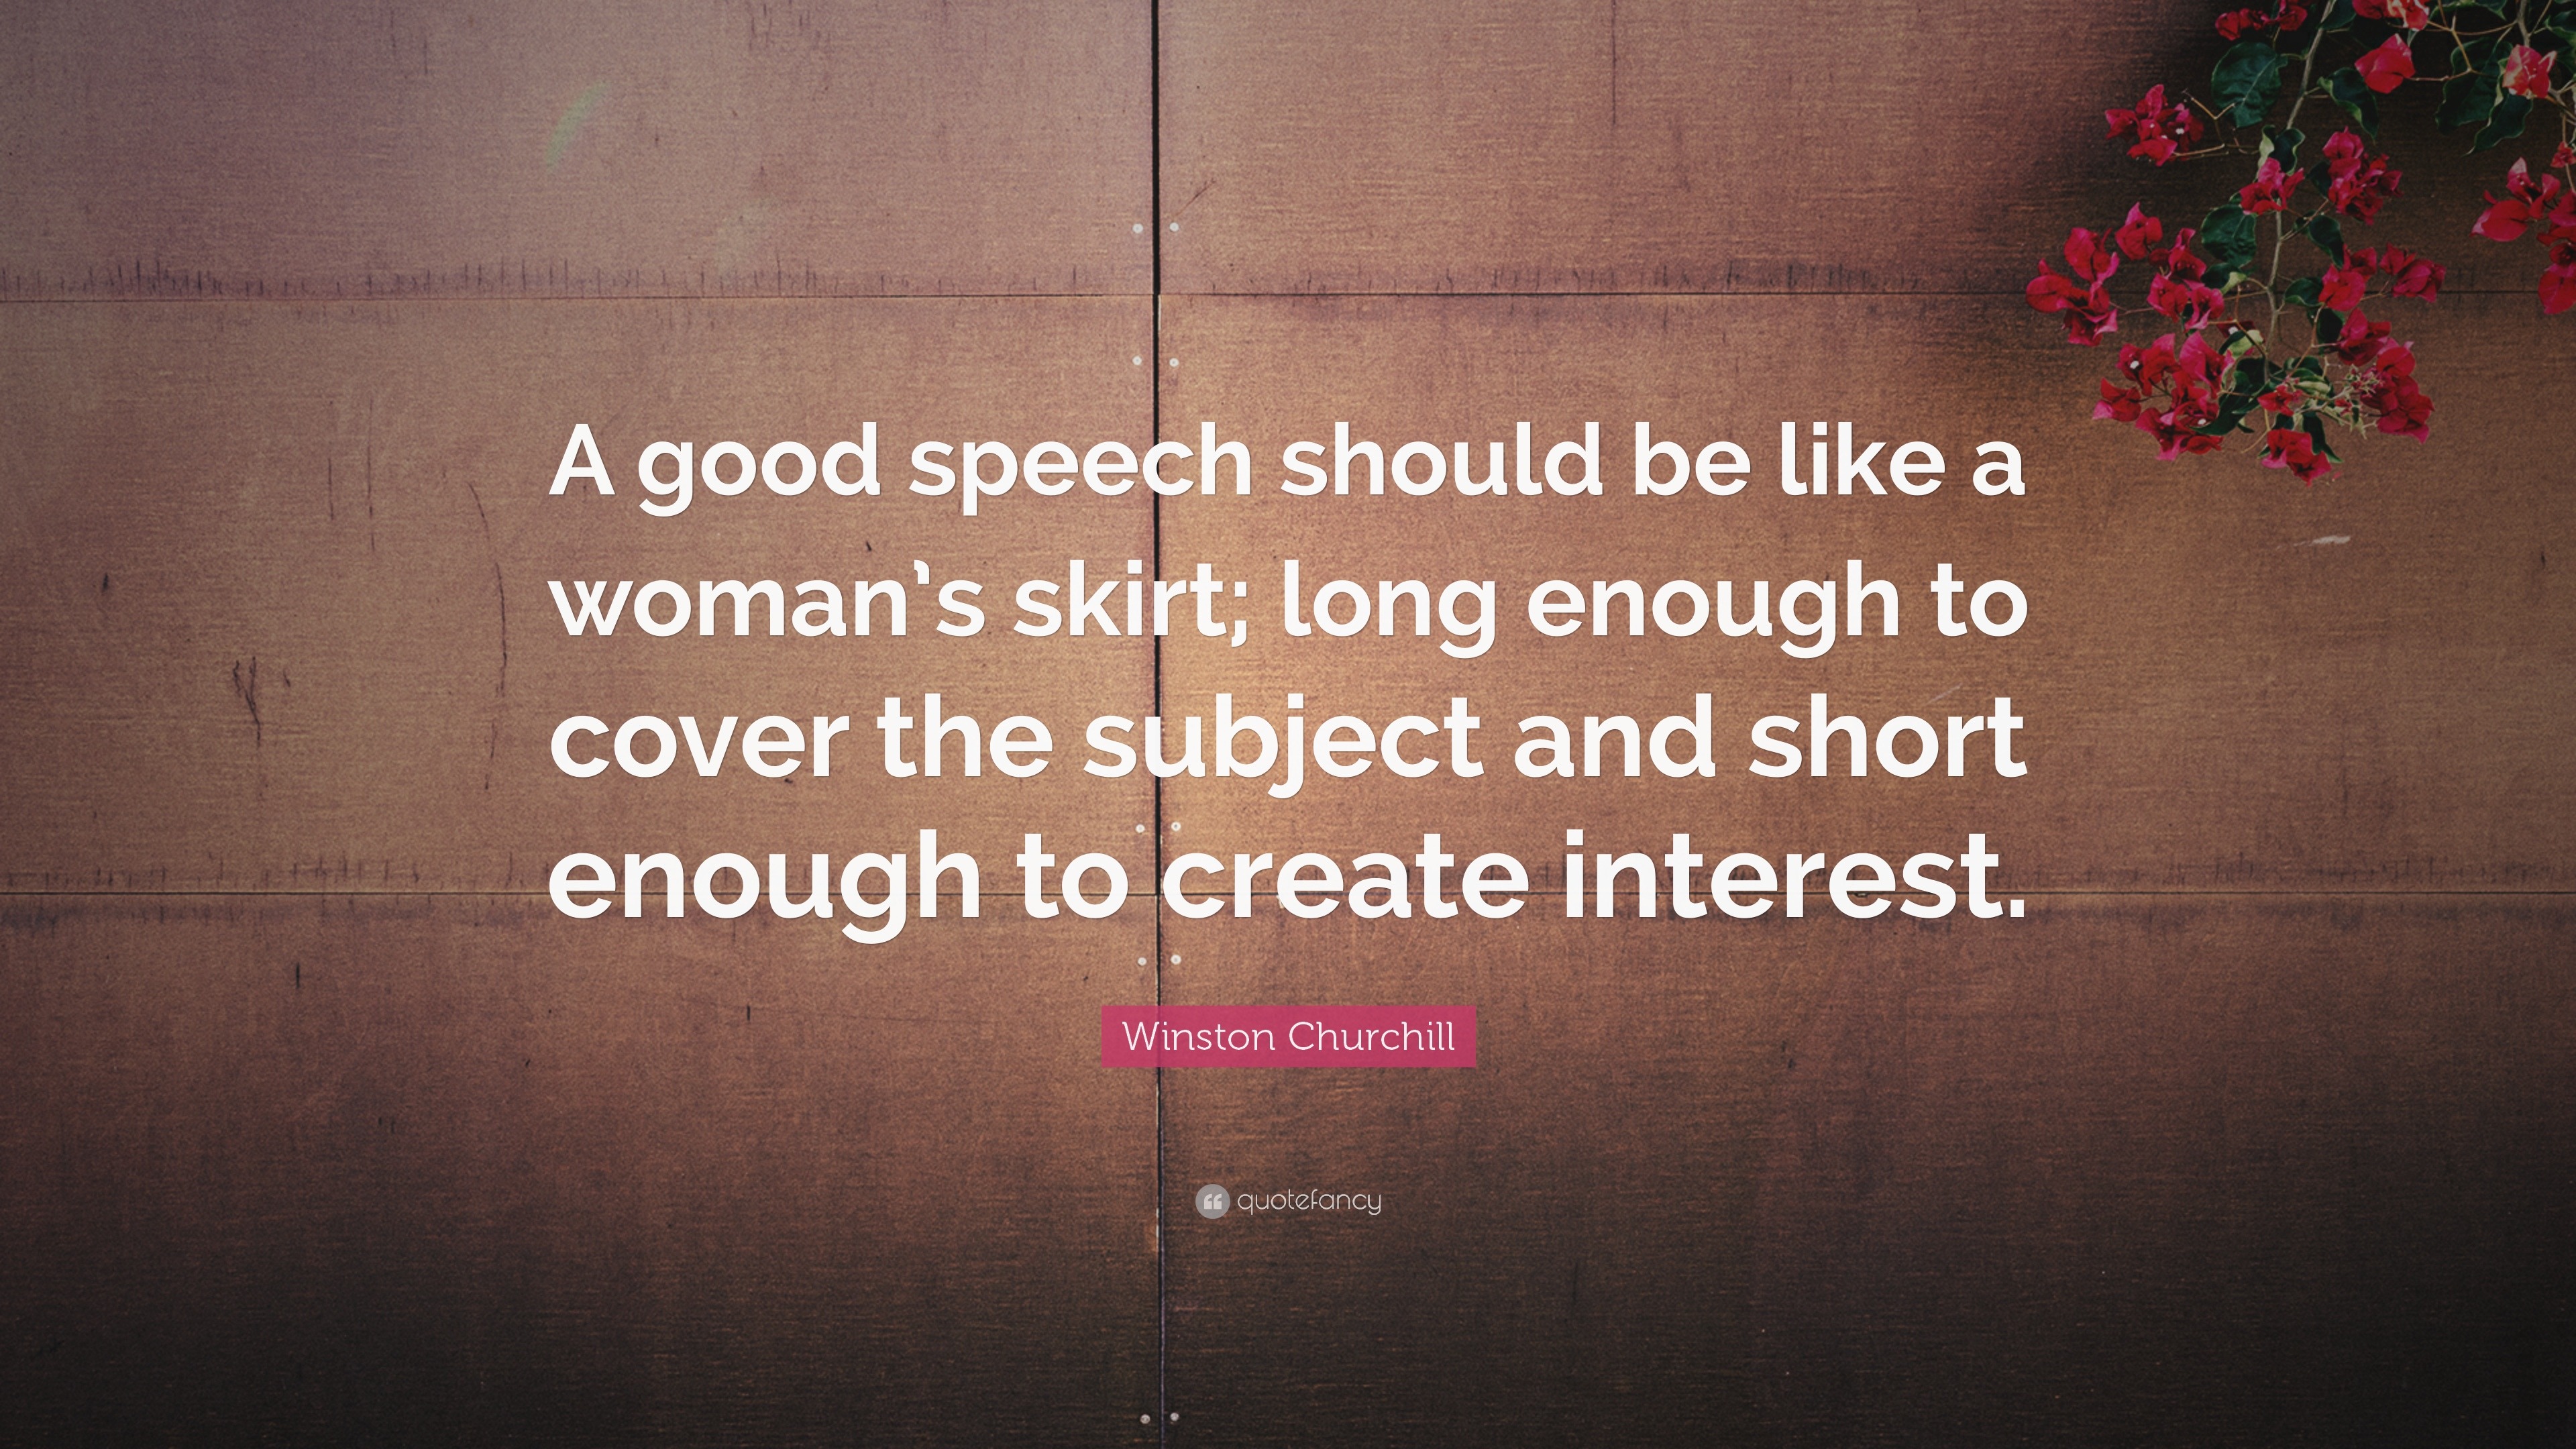 a speech should be like a skirt